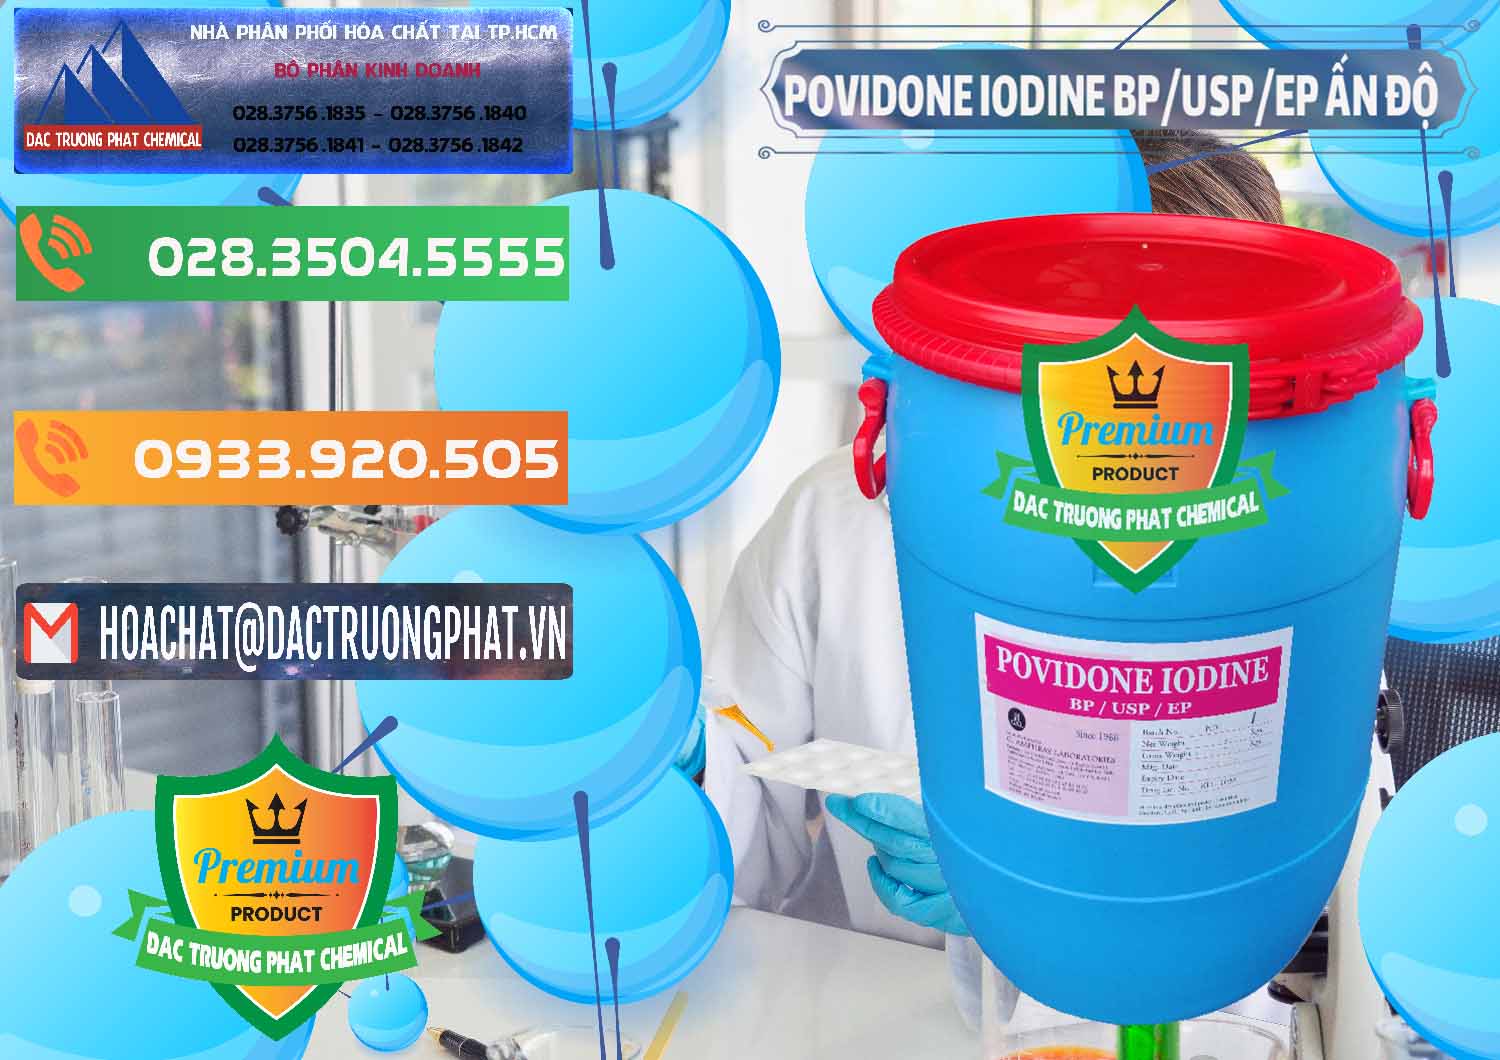 Đơn vị kinh doanh & bán Povidone Iodine BP USP EP Ấn Độ India - 0318 - Nơi phân phối và cung ứng hóa chất tại TP.HCM - hoachatxulynuoc.com.vn